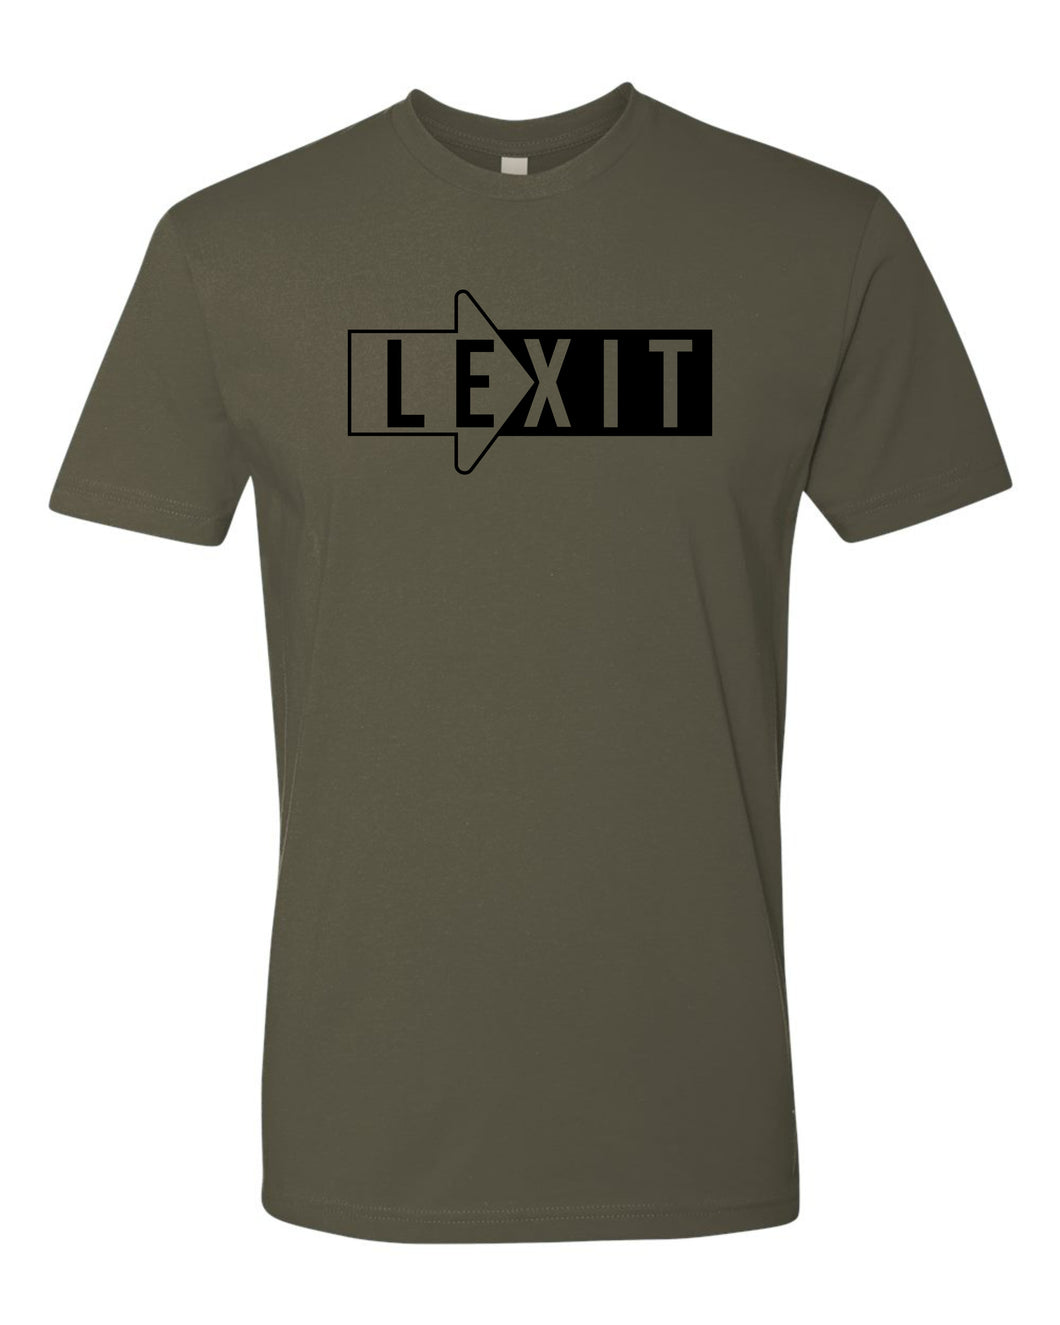 LX-11 Lexit 1 COLOR Tee Shirt 100% Ringspun Cotton